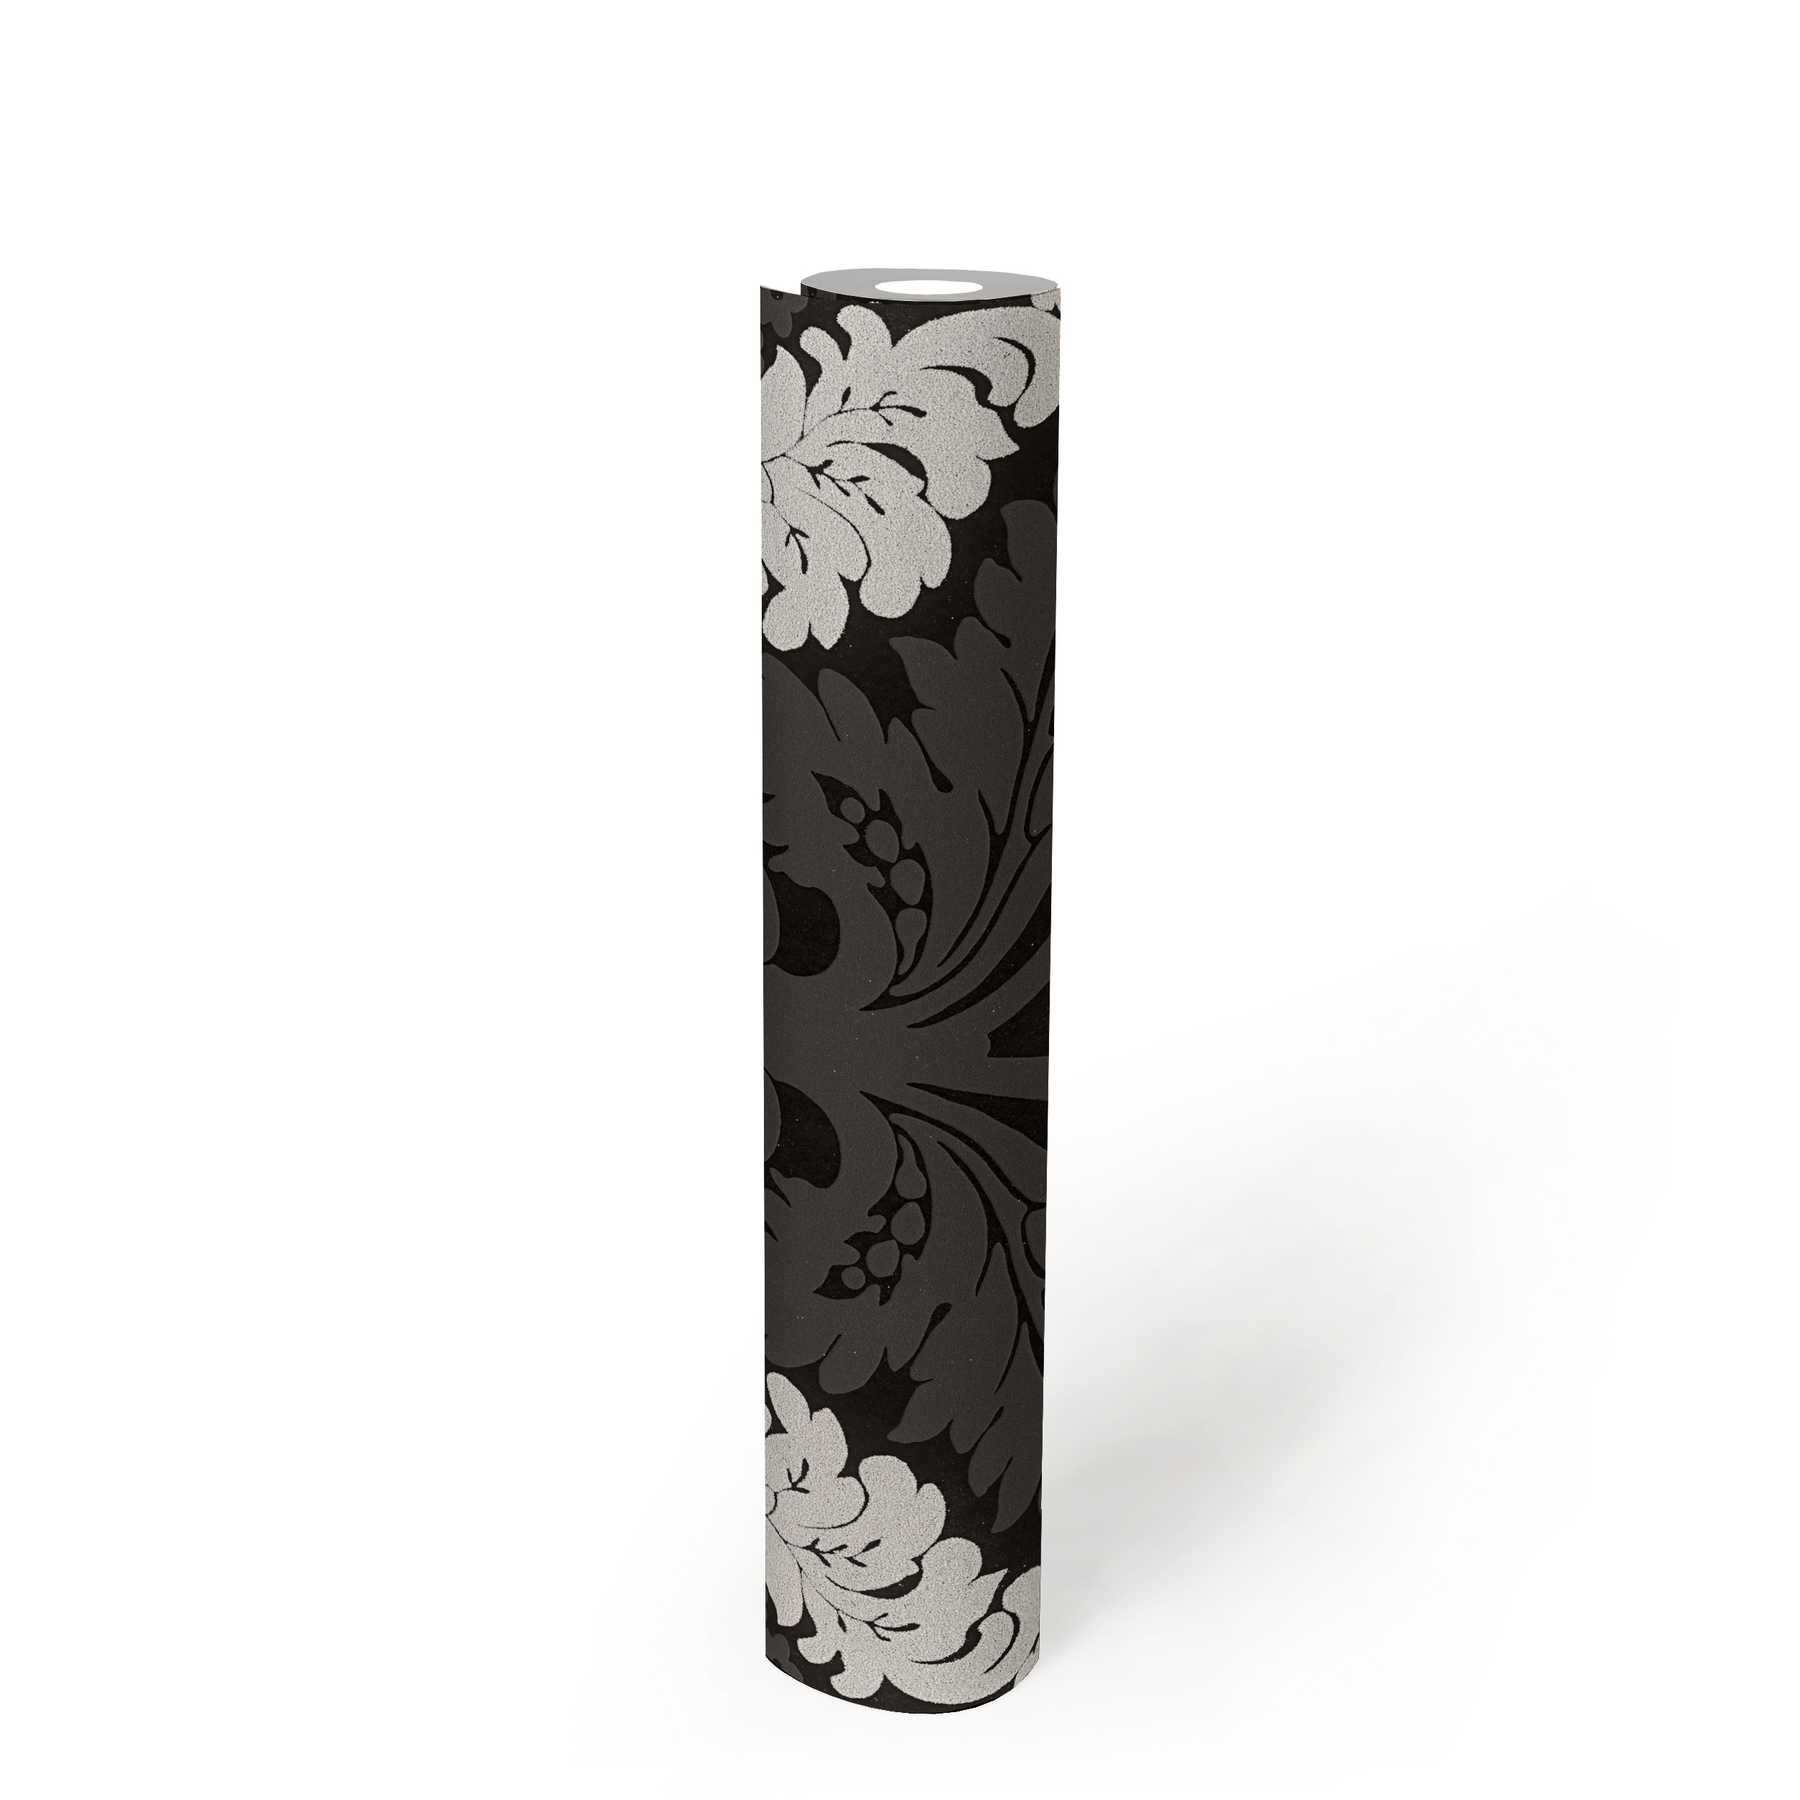             Papier peint ornemental Effet scintillant & effet 3D - noir, argent, blanc
        